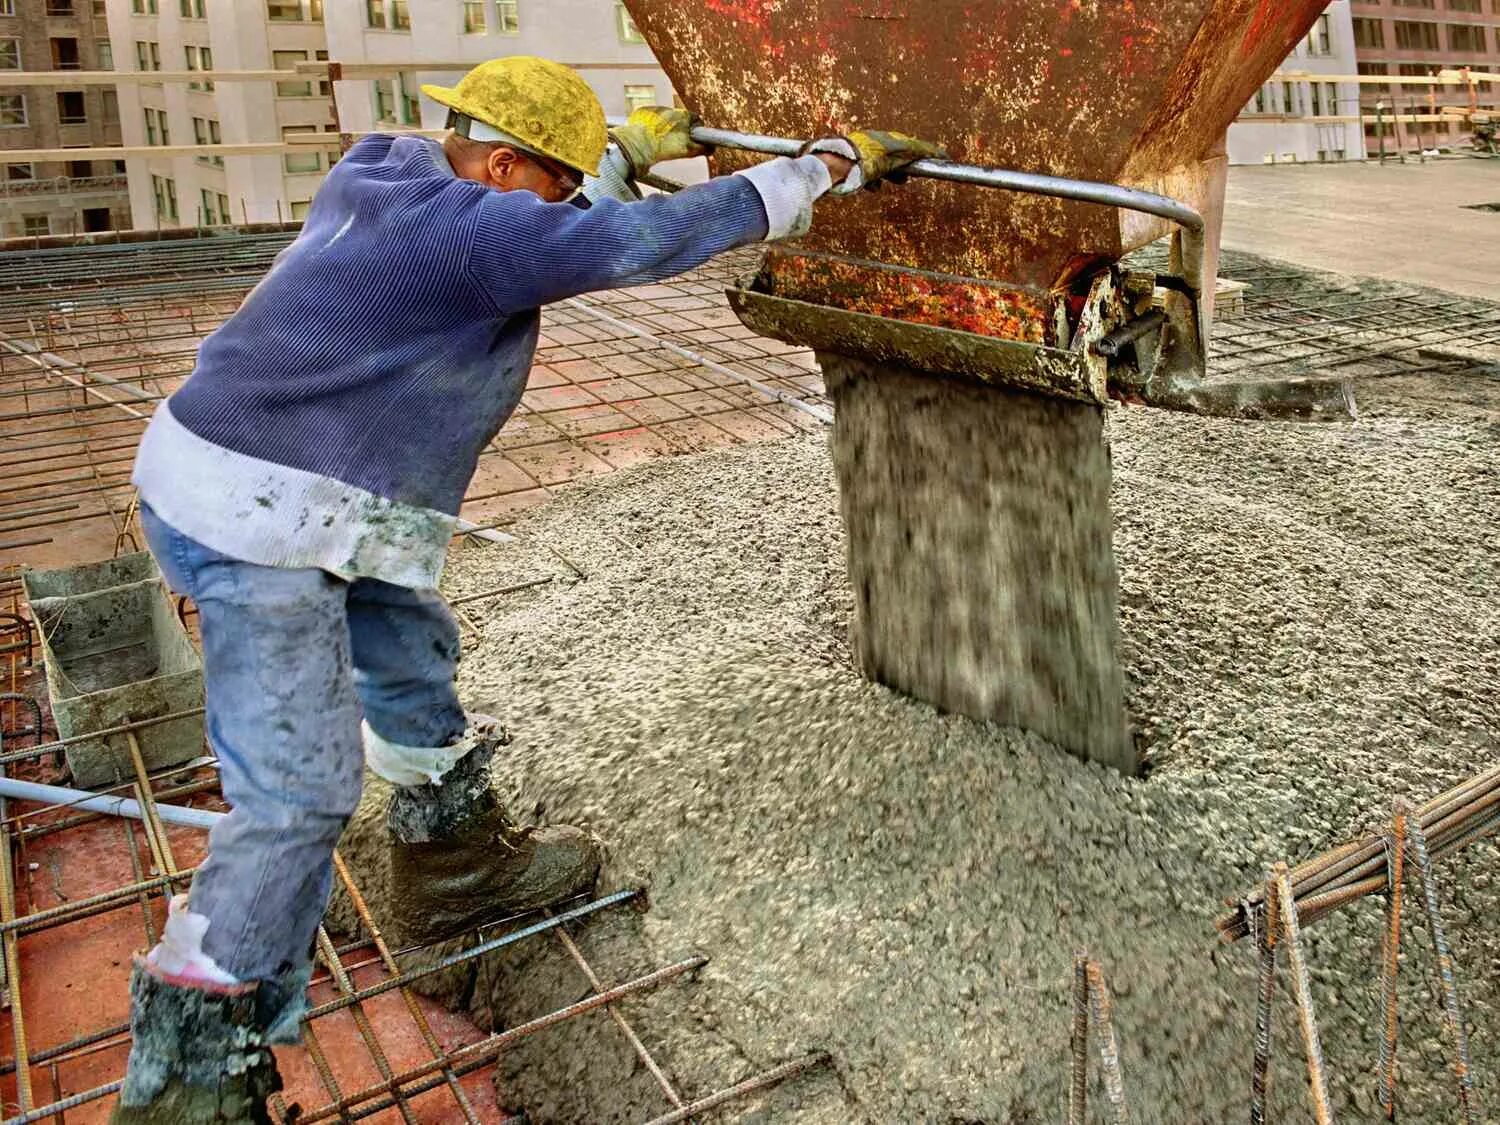 Concrete бетон. Стройка бетон. Бетонирование в строительстве. Строительные растворы. Заливание бетона.